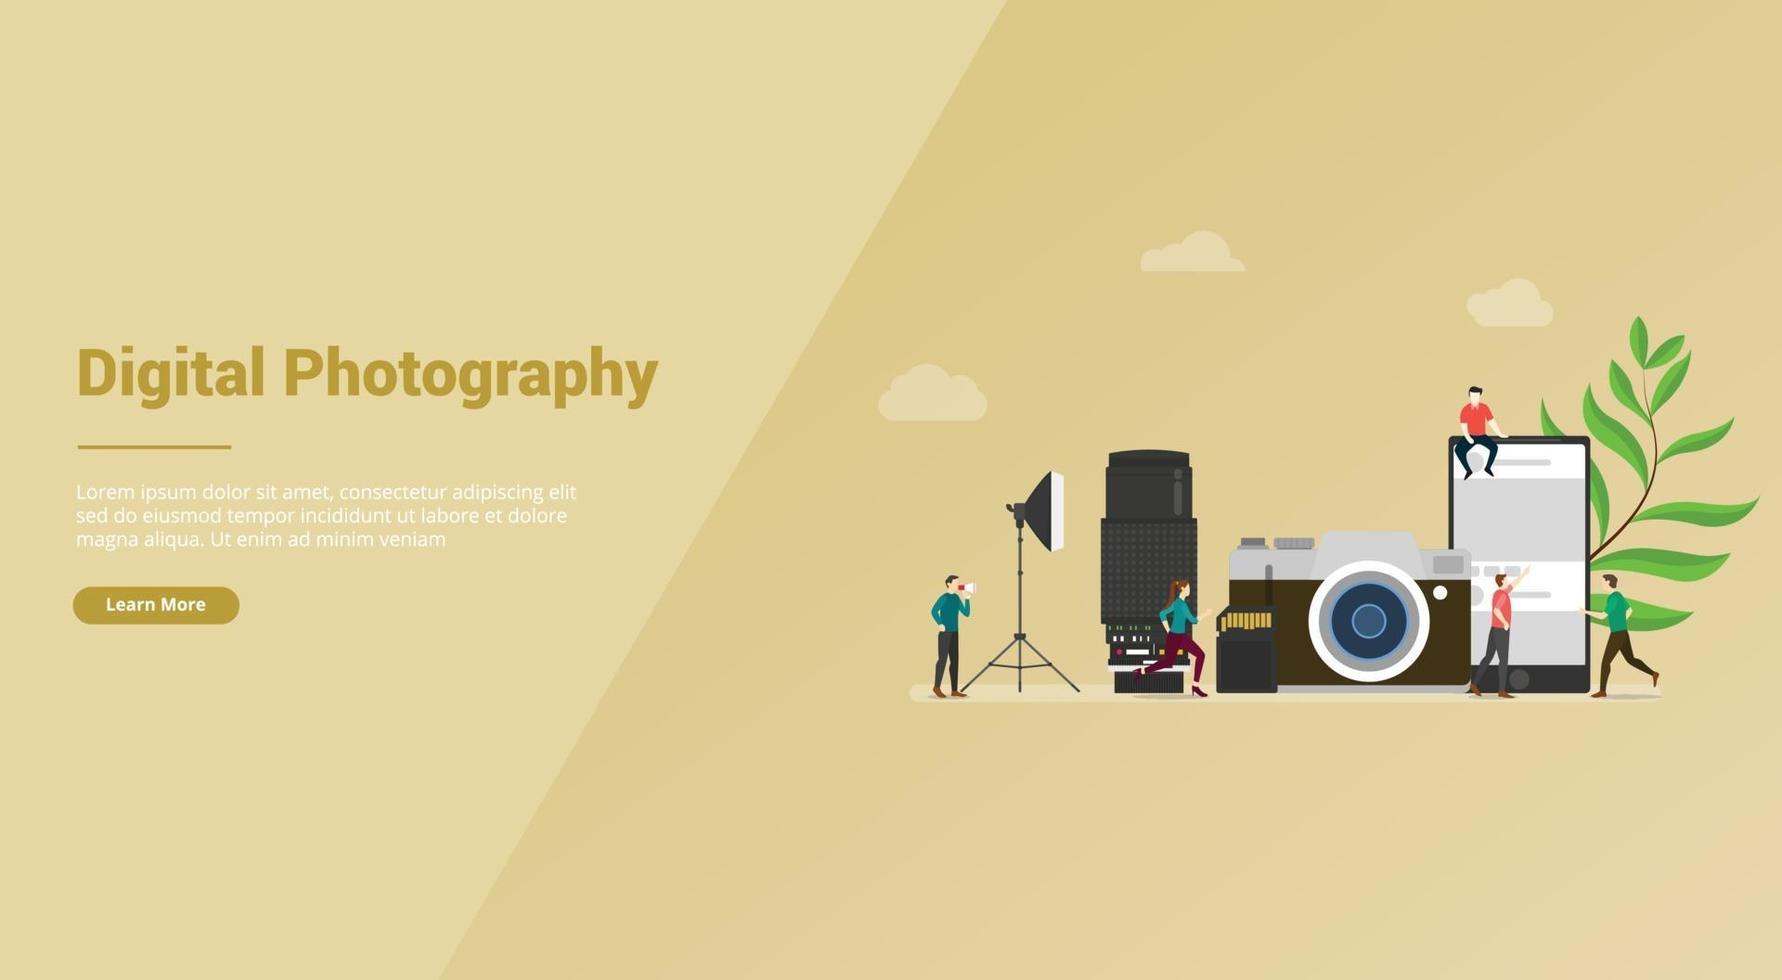 Fotomedienkonzept für digitale Fotografie für Website-Vorlage vektor